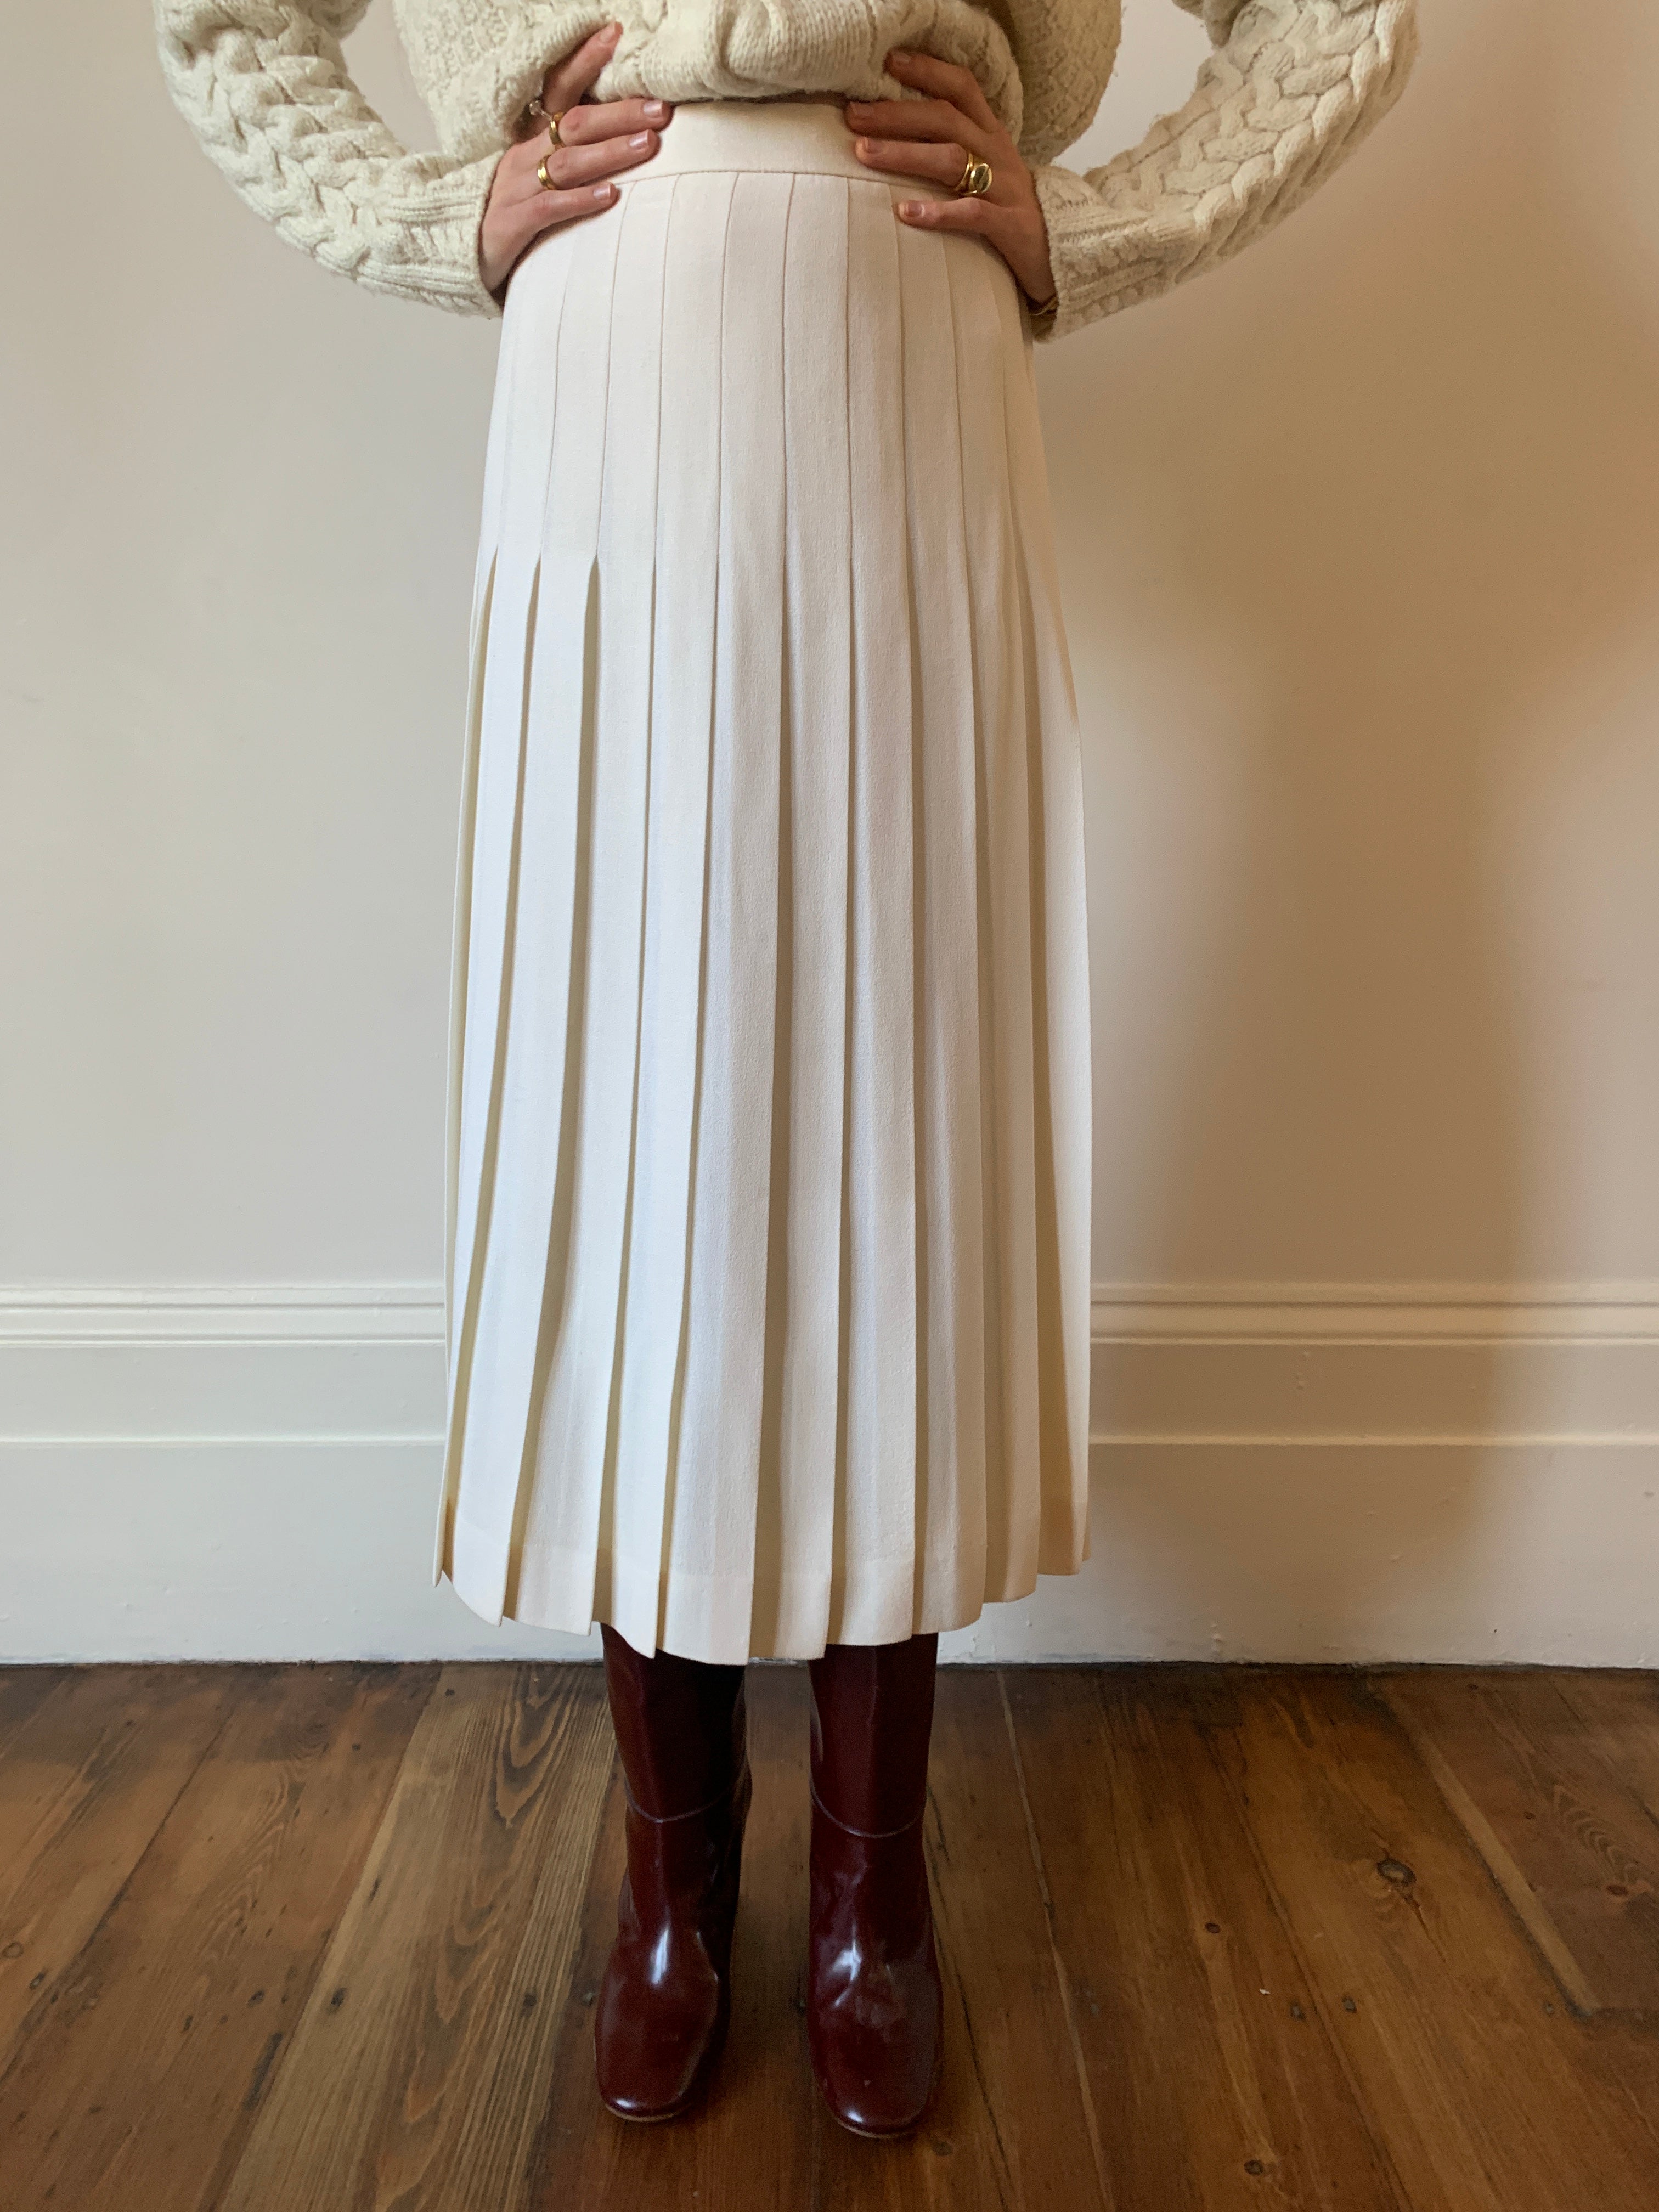 Vintage Ede & Ravenscroft pleated wool skirt